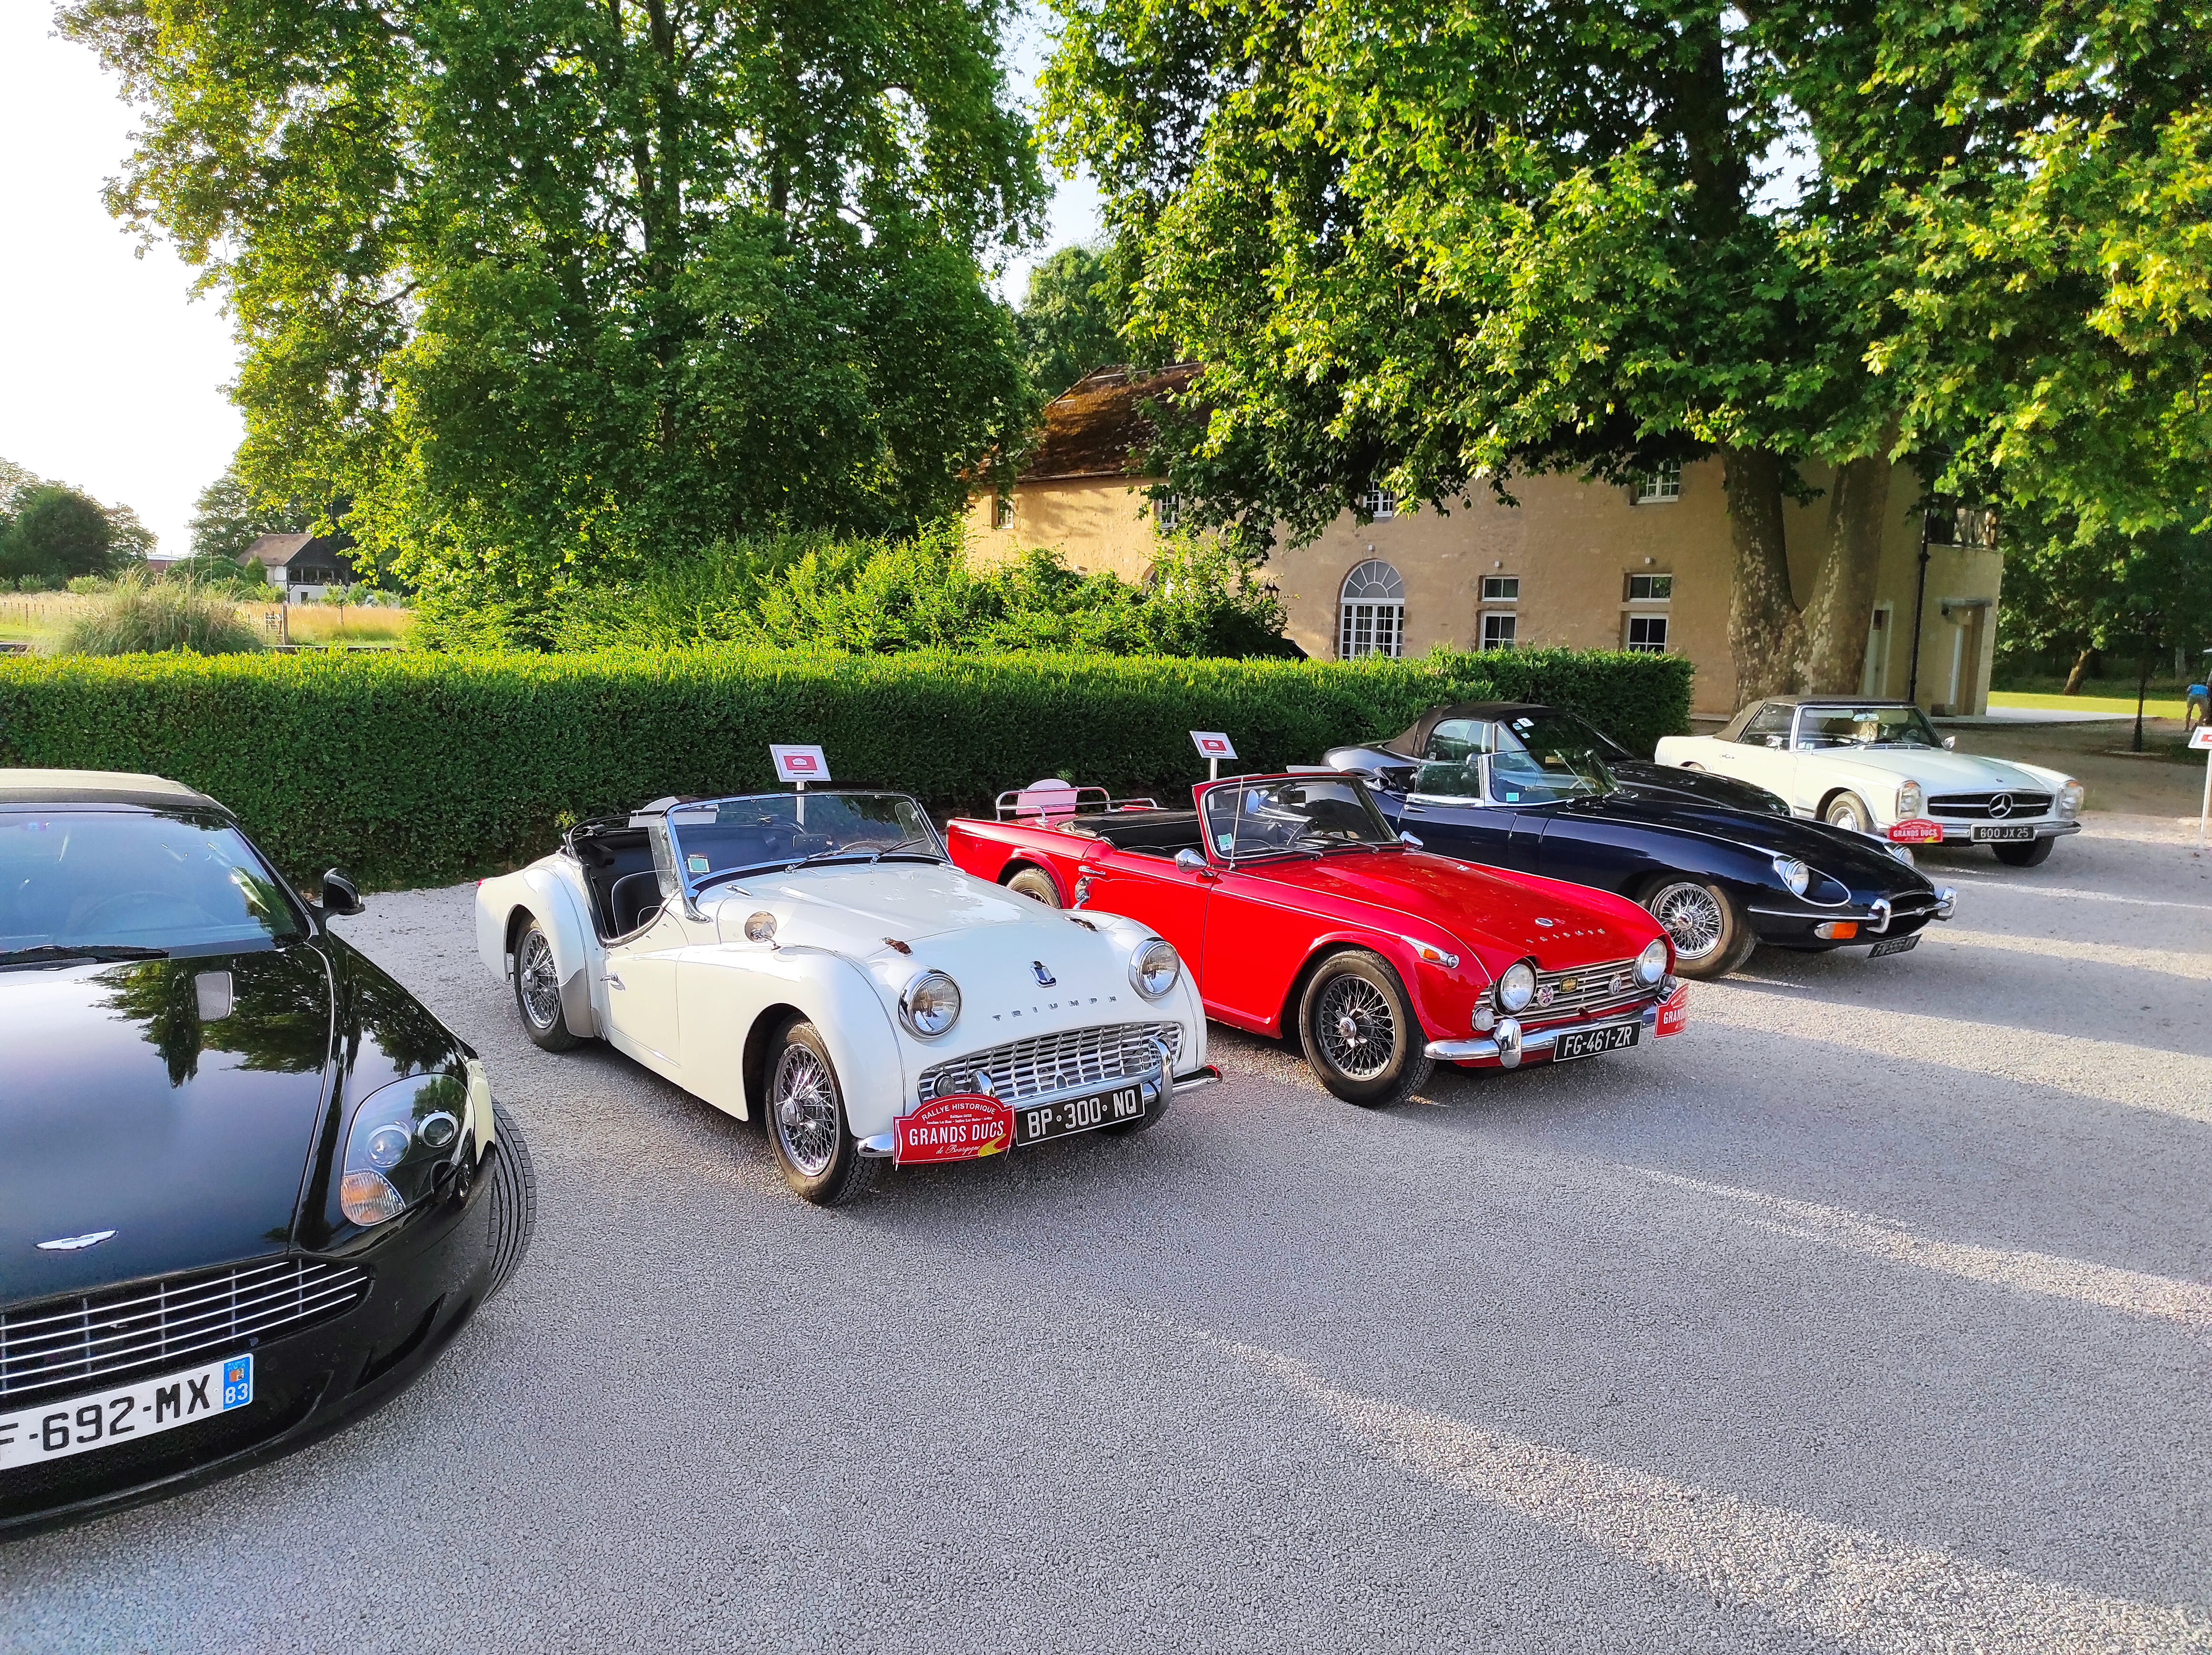 Collection de voiture de collection devant un hôtel particulier de Bourgogne